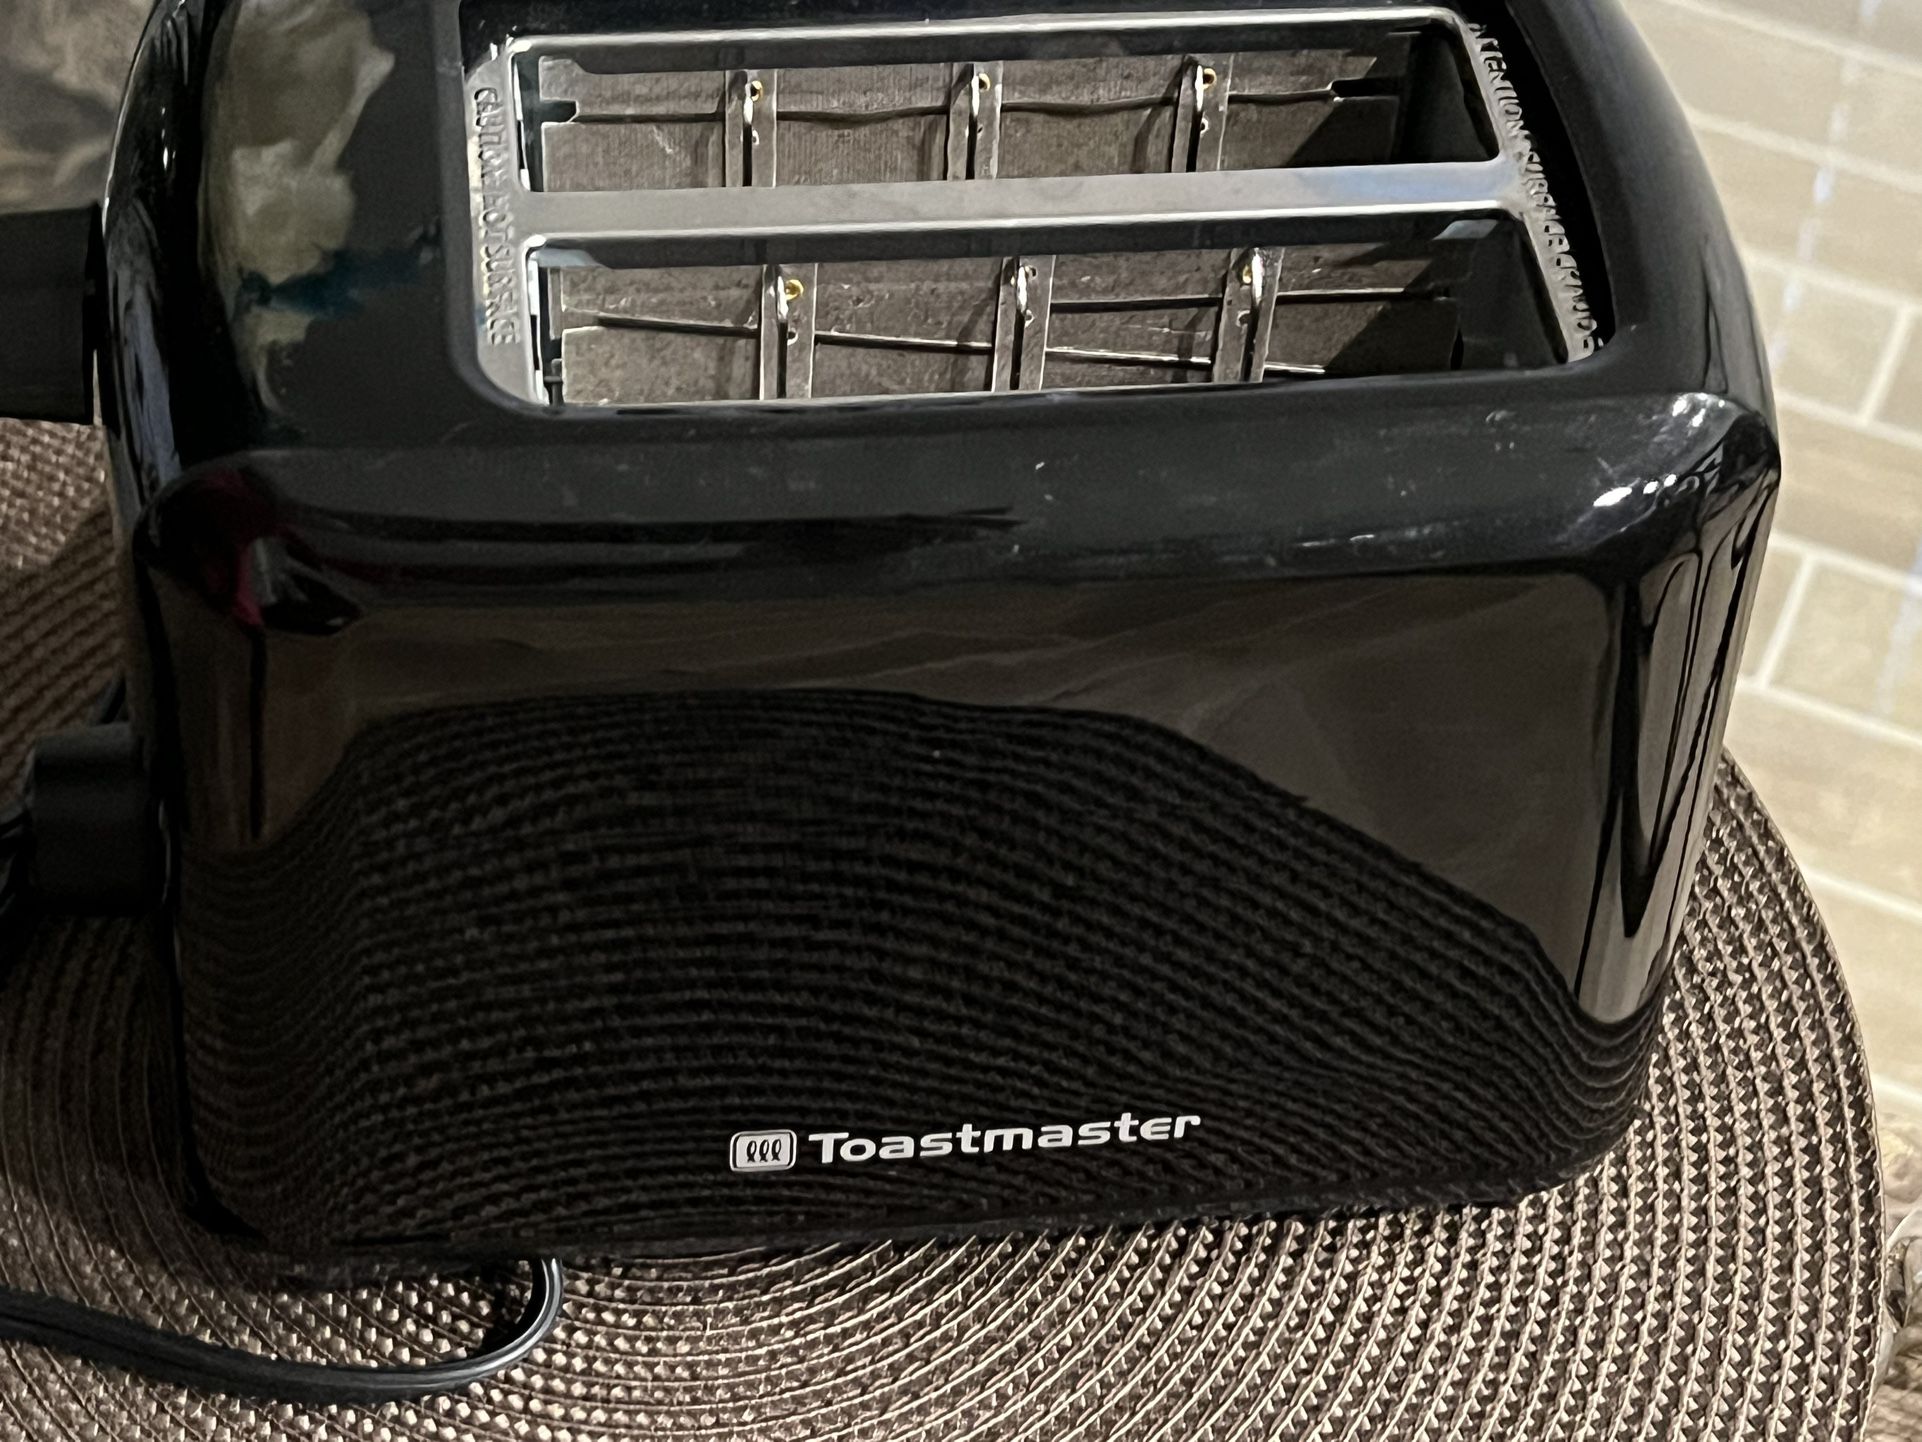 Toastmaster Toaster 